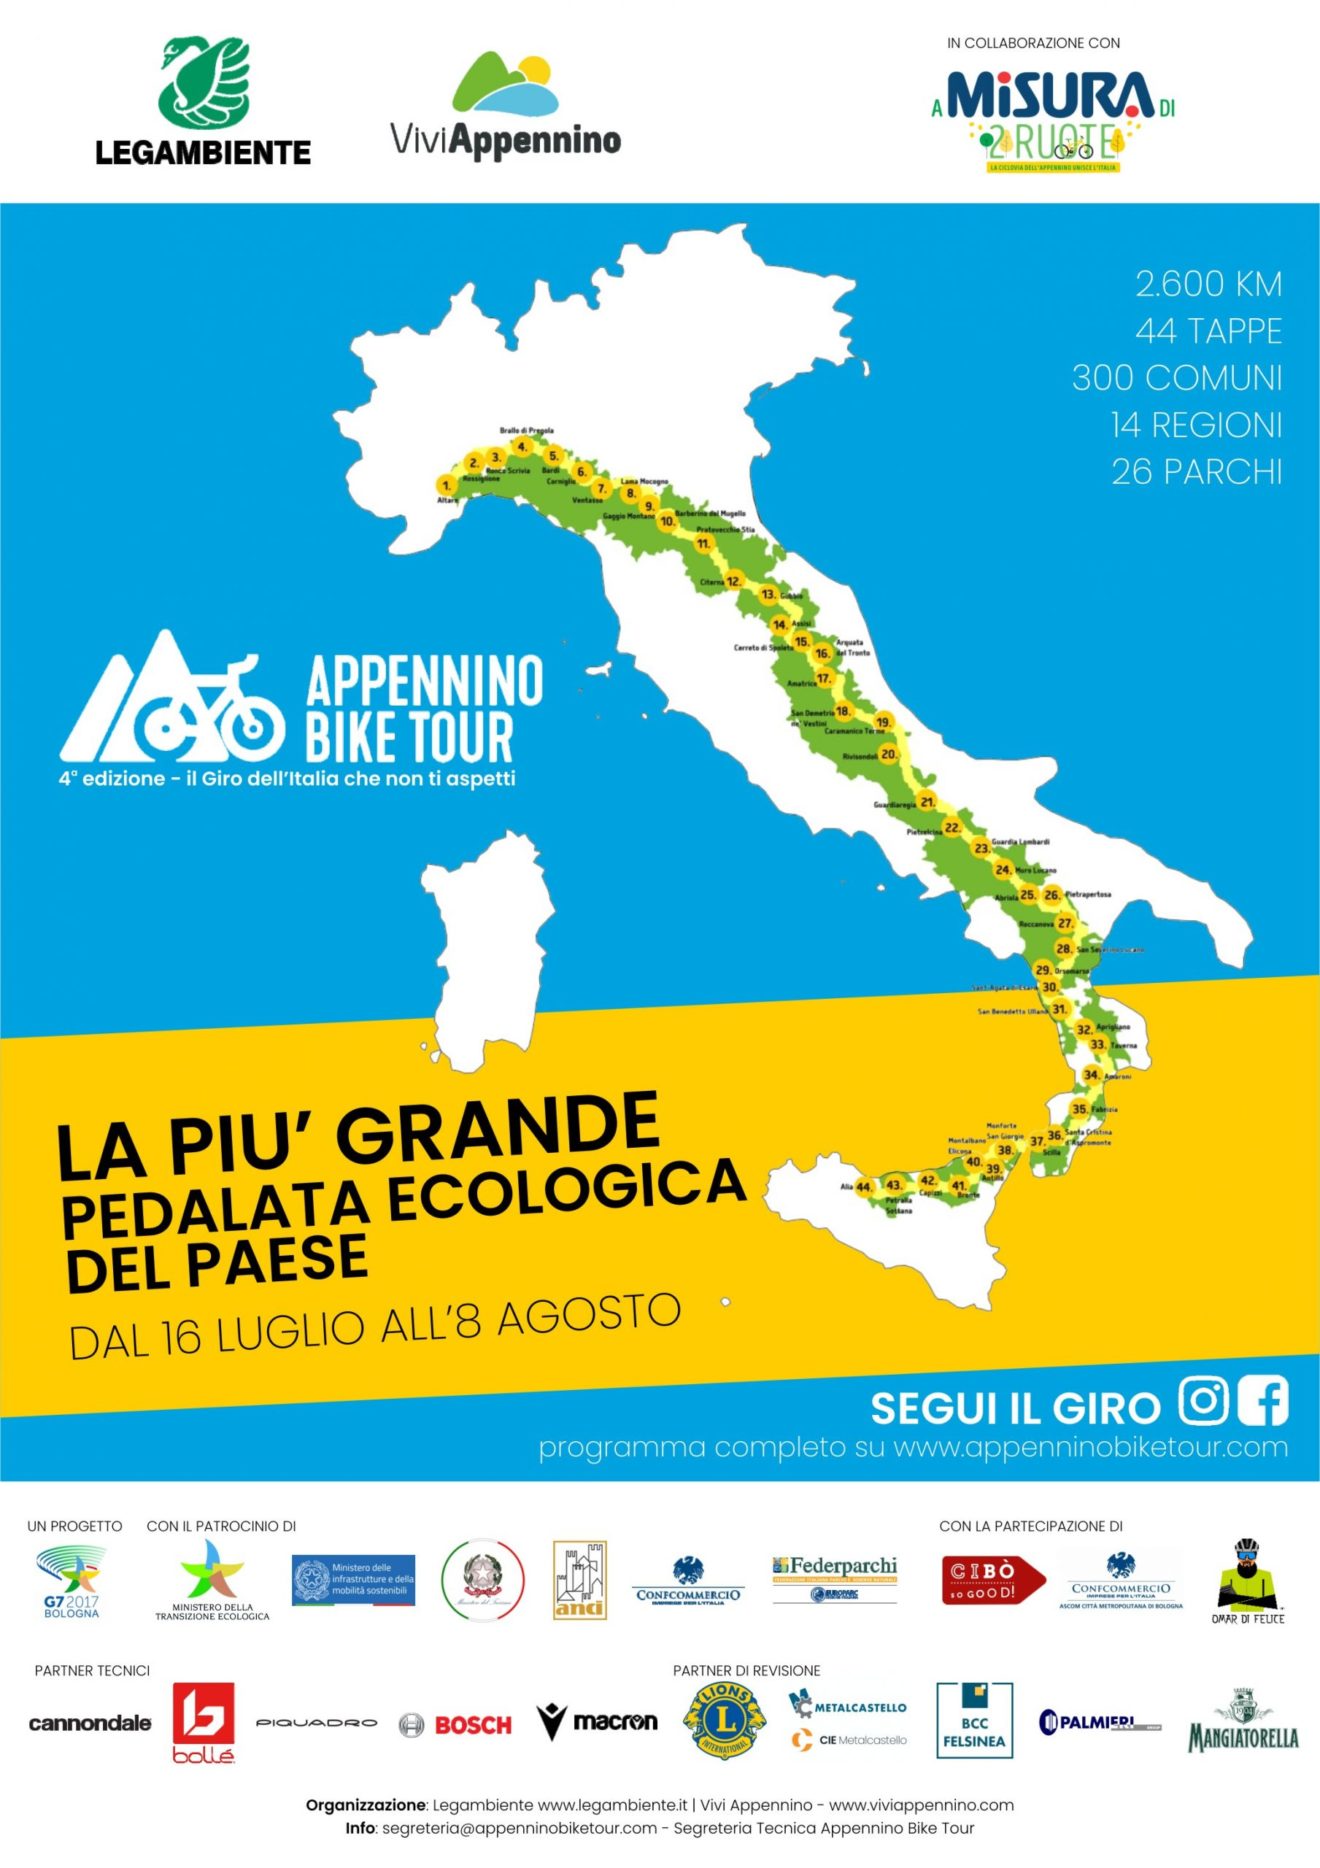 Appennino Bike Tour: dalla Liguria alla Sicilia per duemila seicento chilometri completamente attrezzati